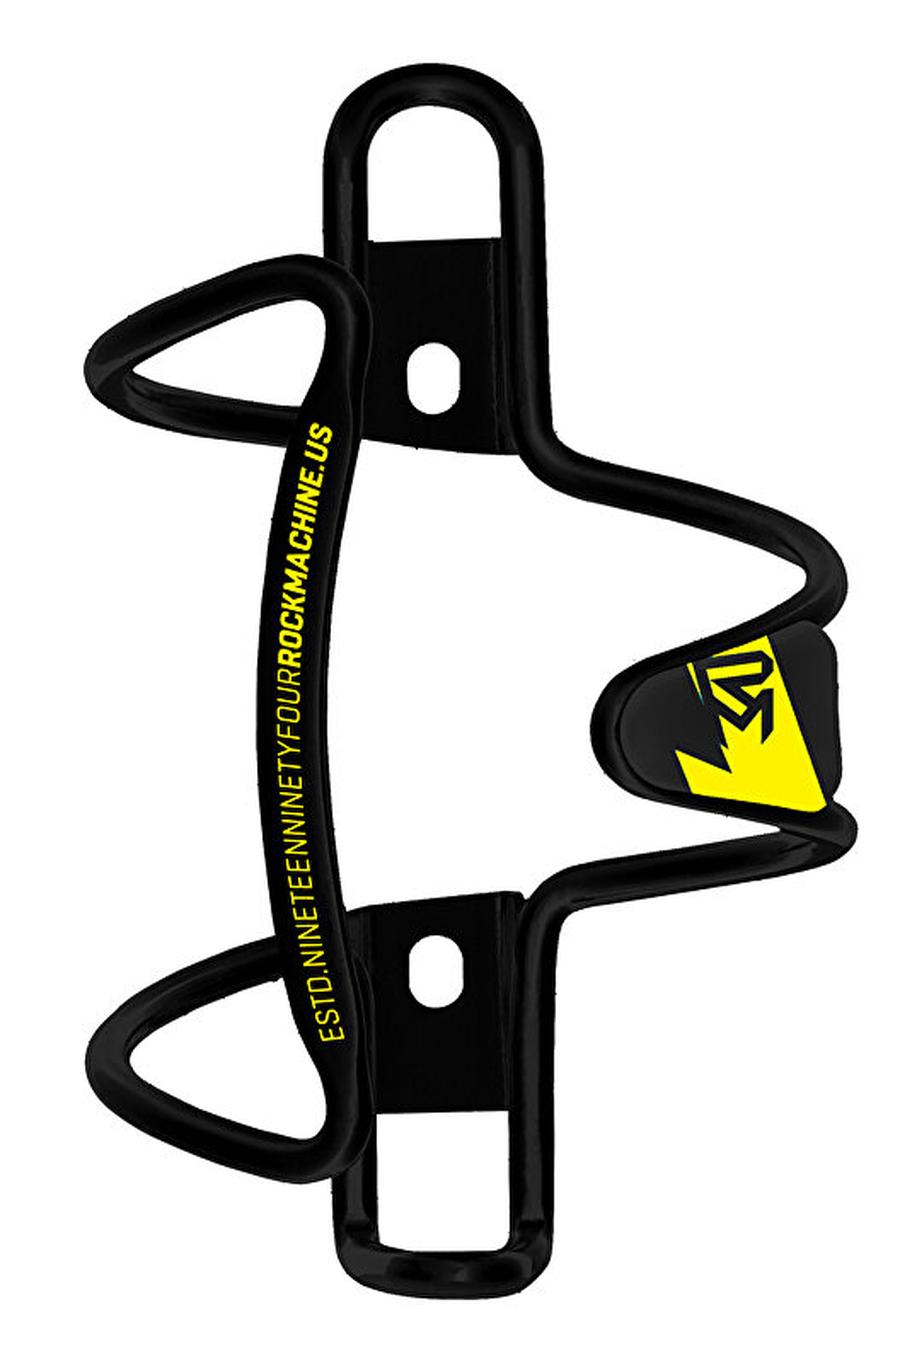 Cyklistický košík na lahev Rock Machine Tour Alu černo/žlutý